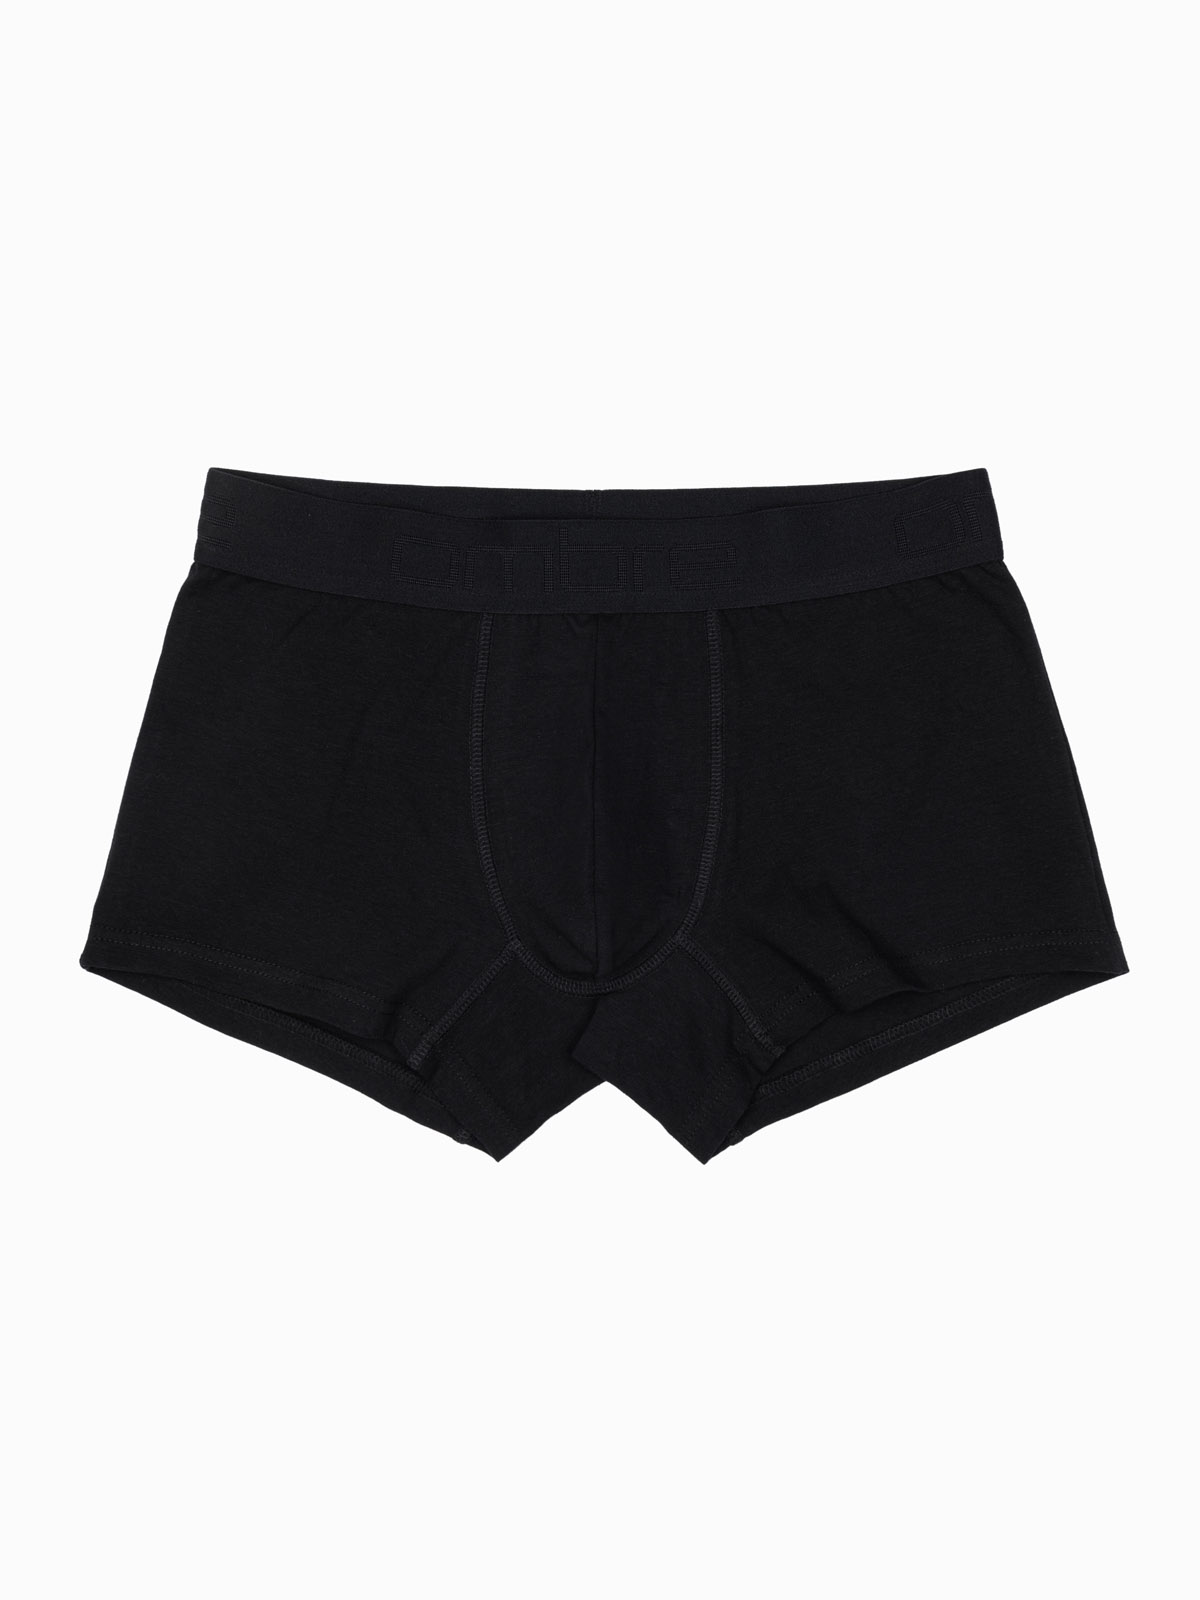 Men's underpants - black U285 | MODONE wholesale - Clothing For Men